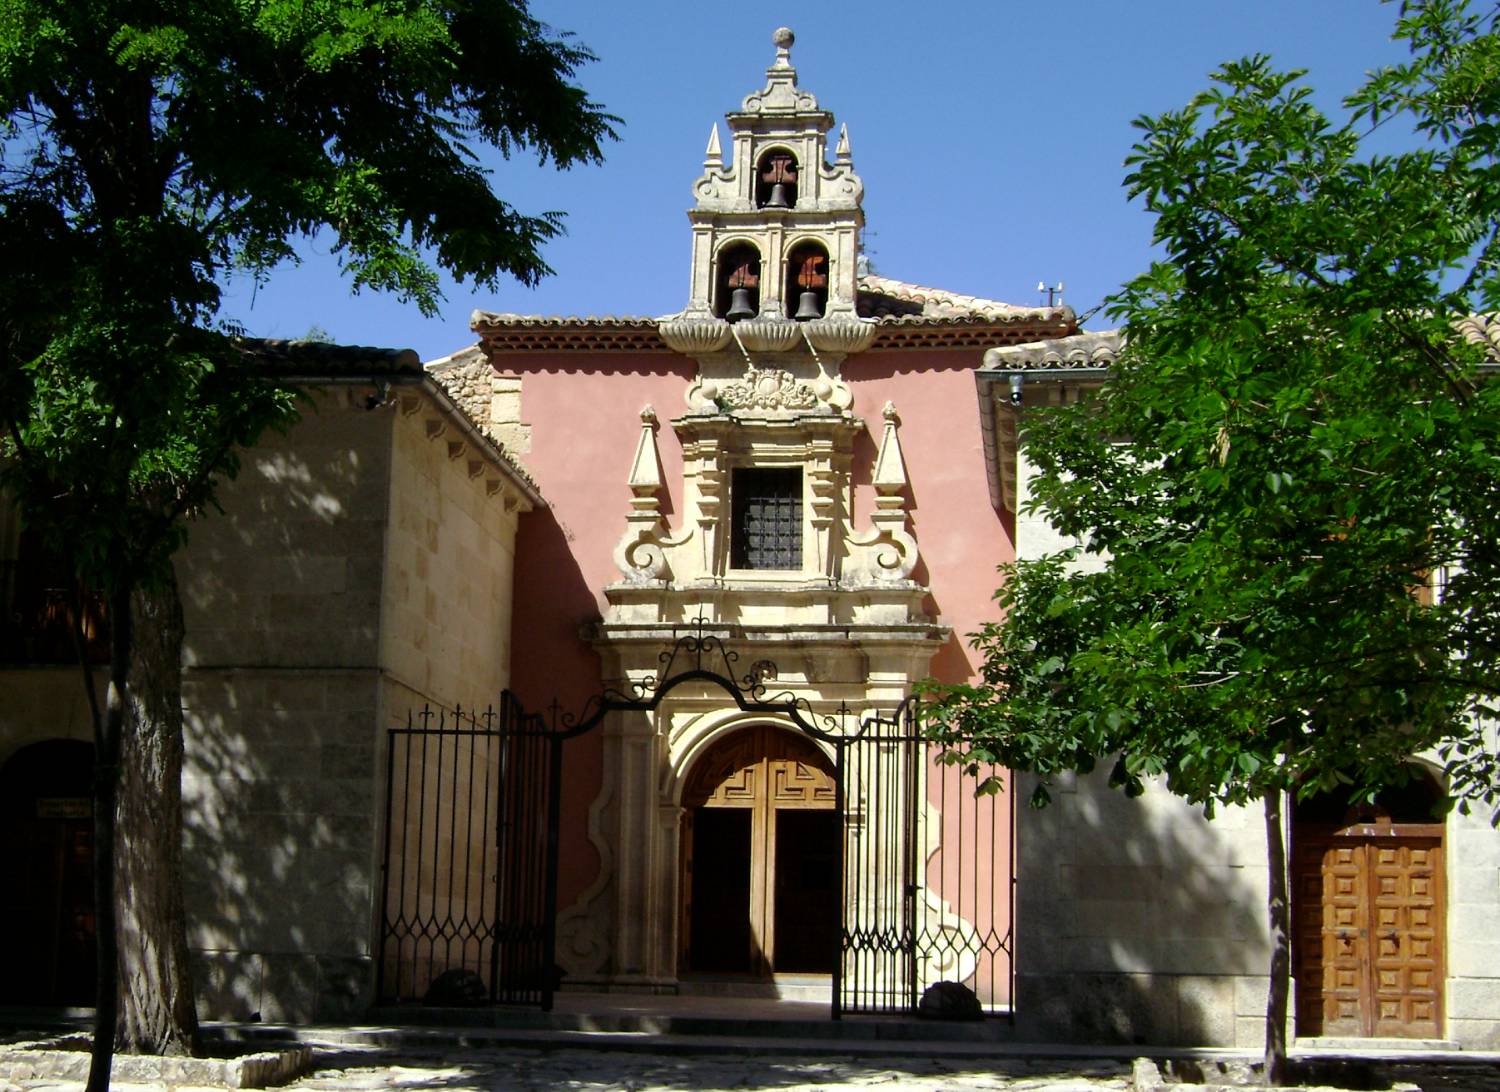 La Ermita de Nuestra Senora de las Angustias in Malaga was commissioned by the Bernarda Maria Alferez Velasco in 1720 (Wikipedia)